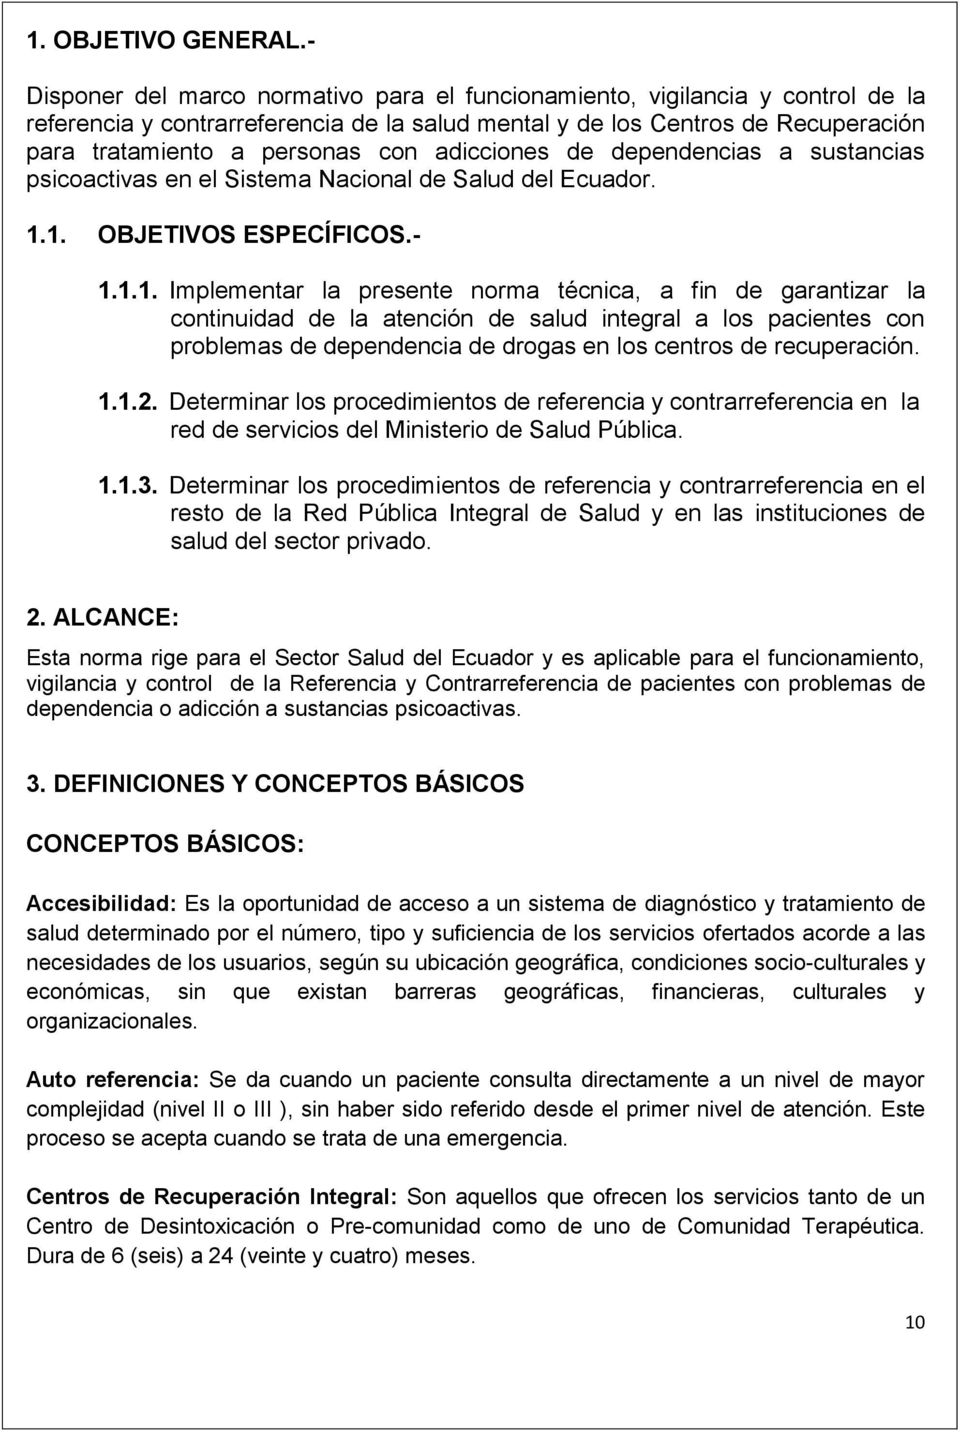 adicciones de dependencias a sustancias psicoactivas en el Sistema Nacional de Salud del Ecuador. 1.